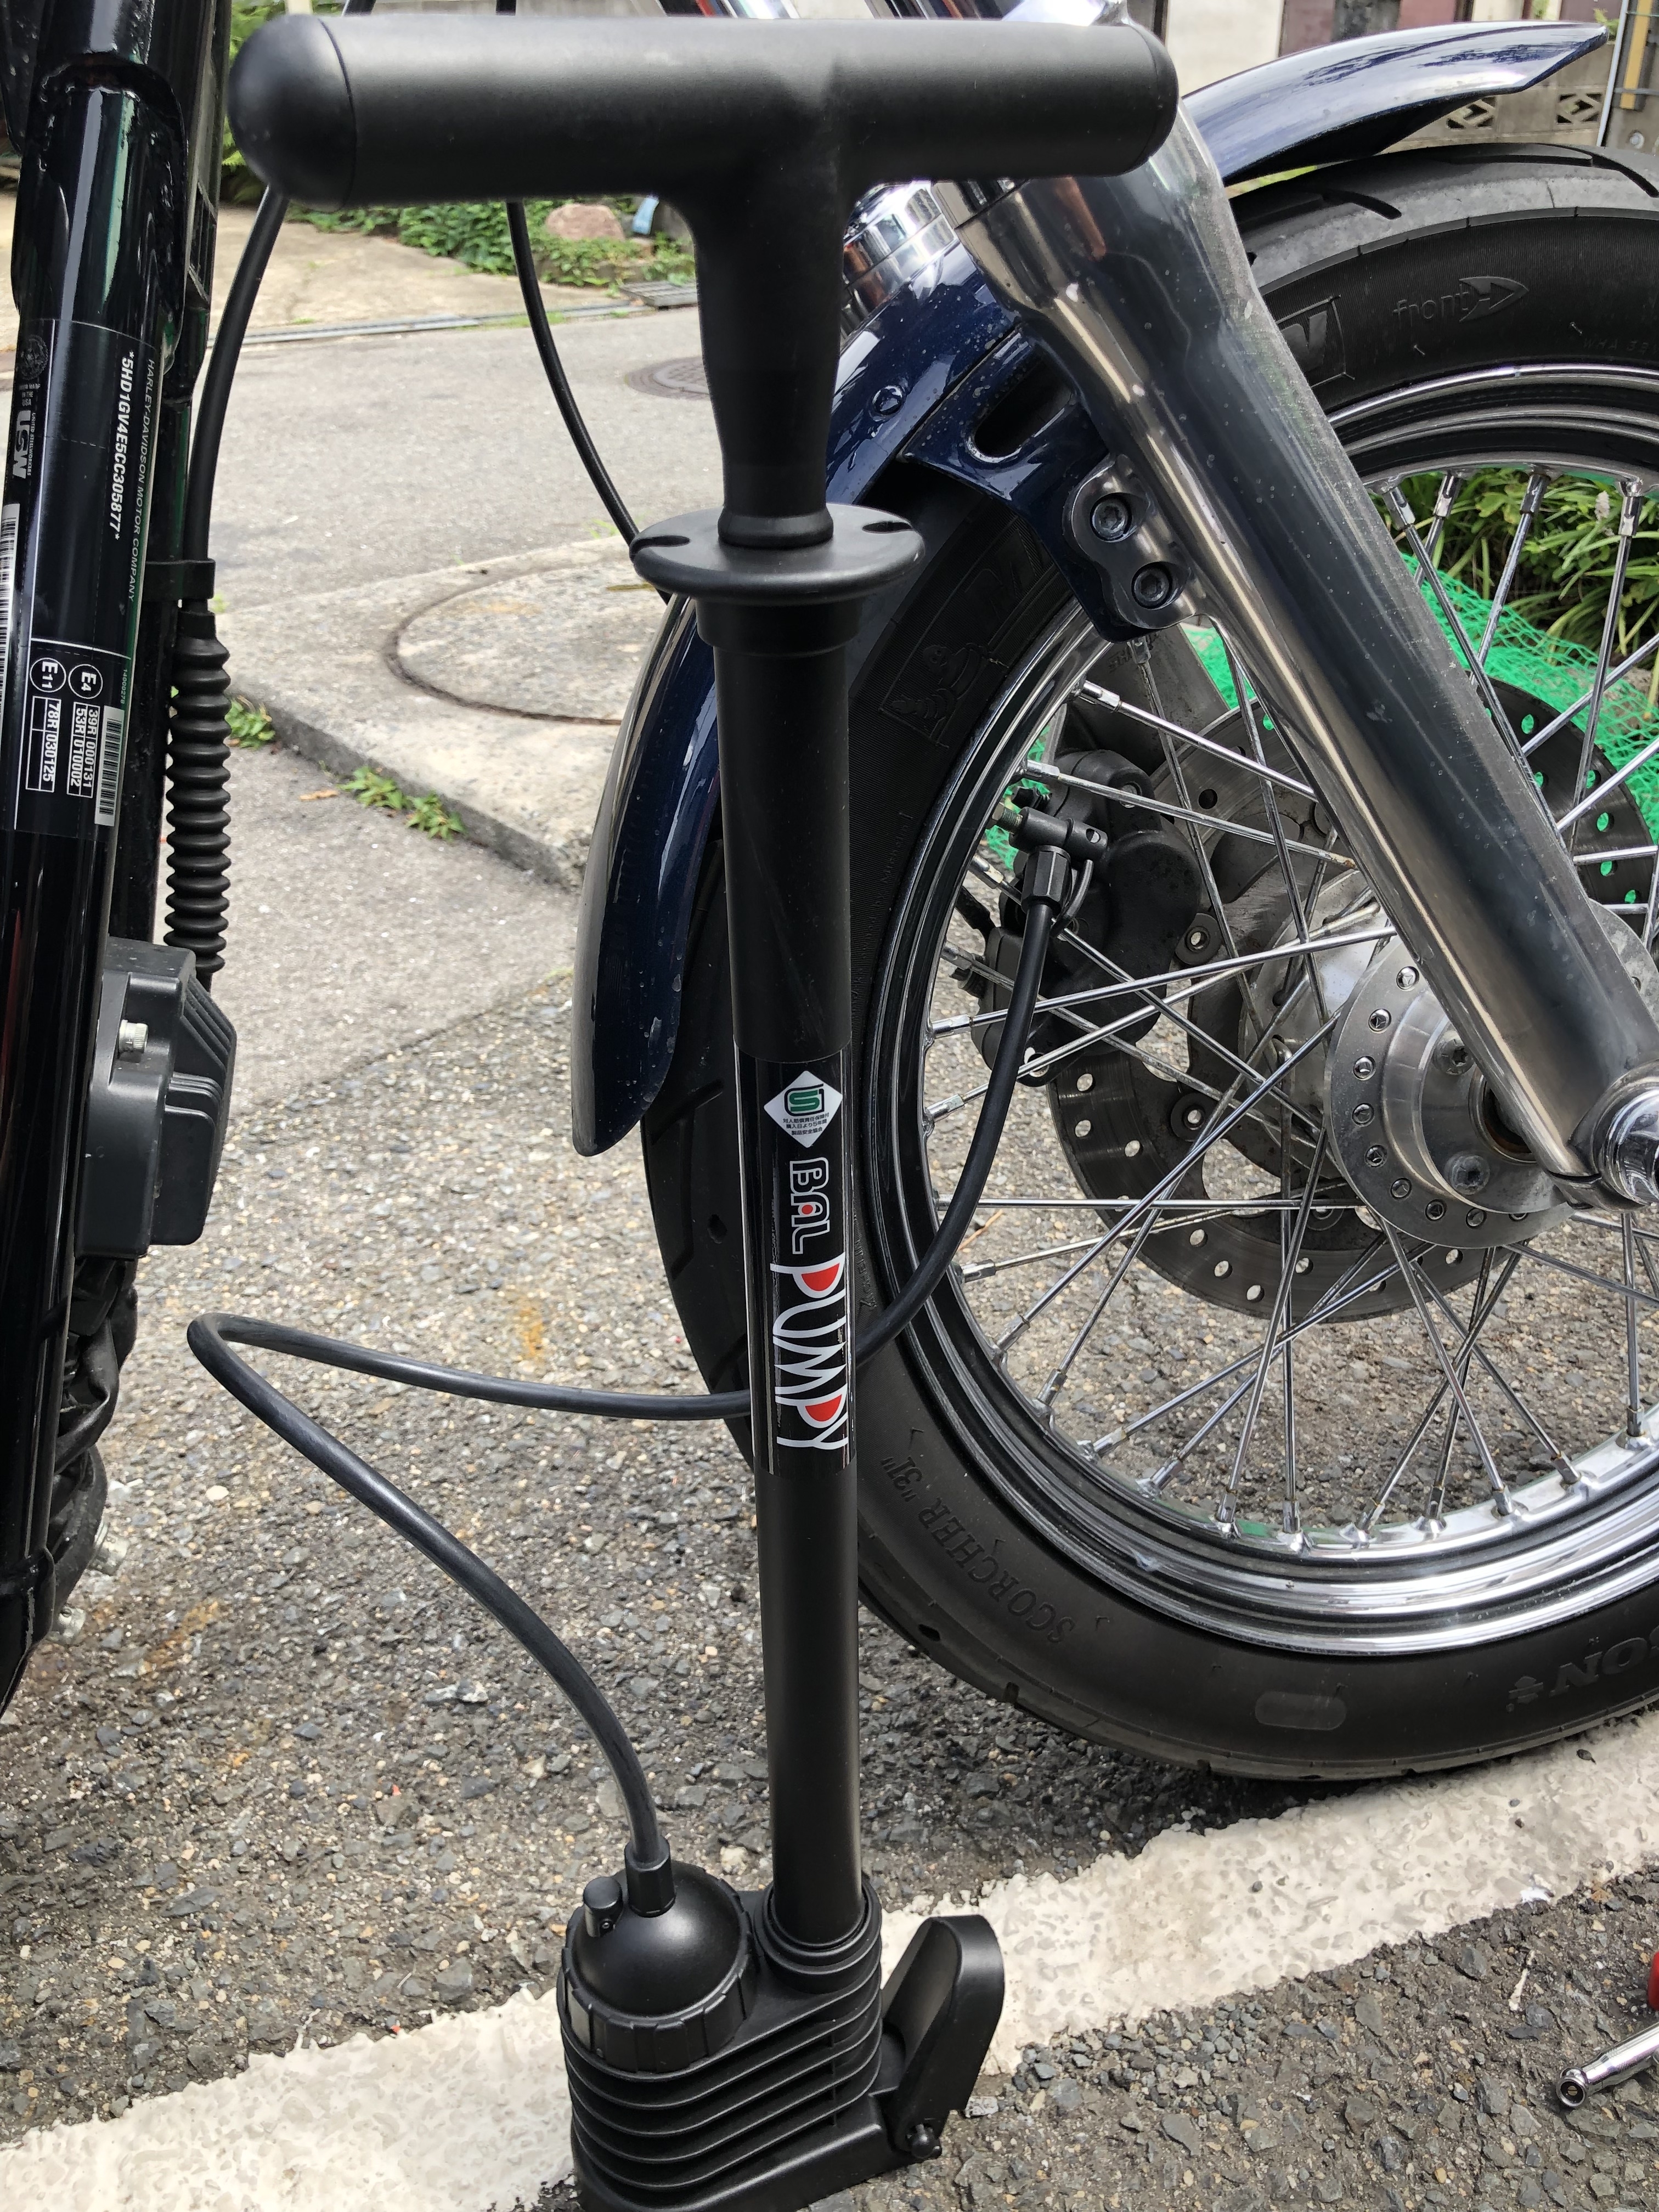 ハーレー ダイナ バイクの空気圧確認 おすすめ空気入れ『ポンピー』 - ぴーきち ハーレーブログ